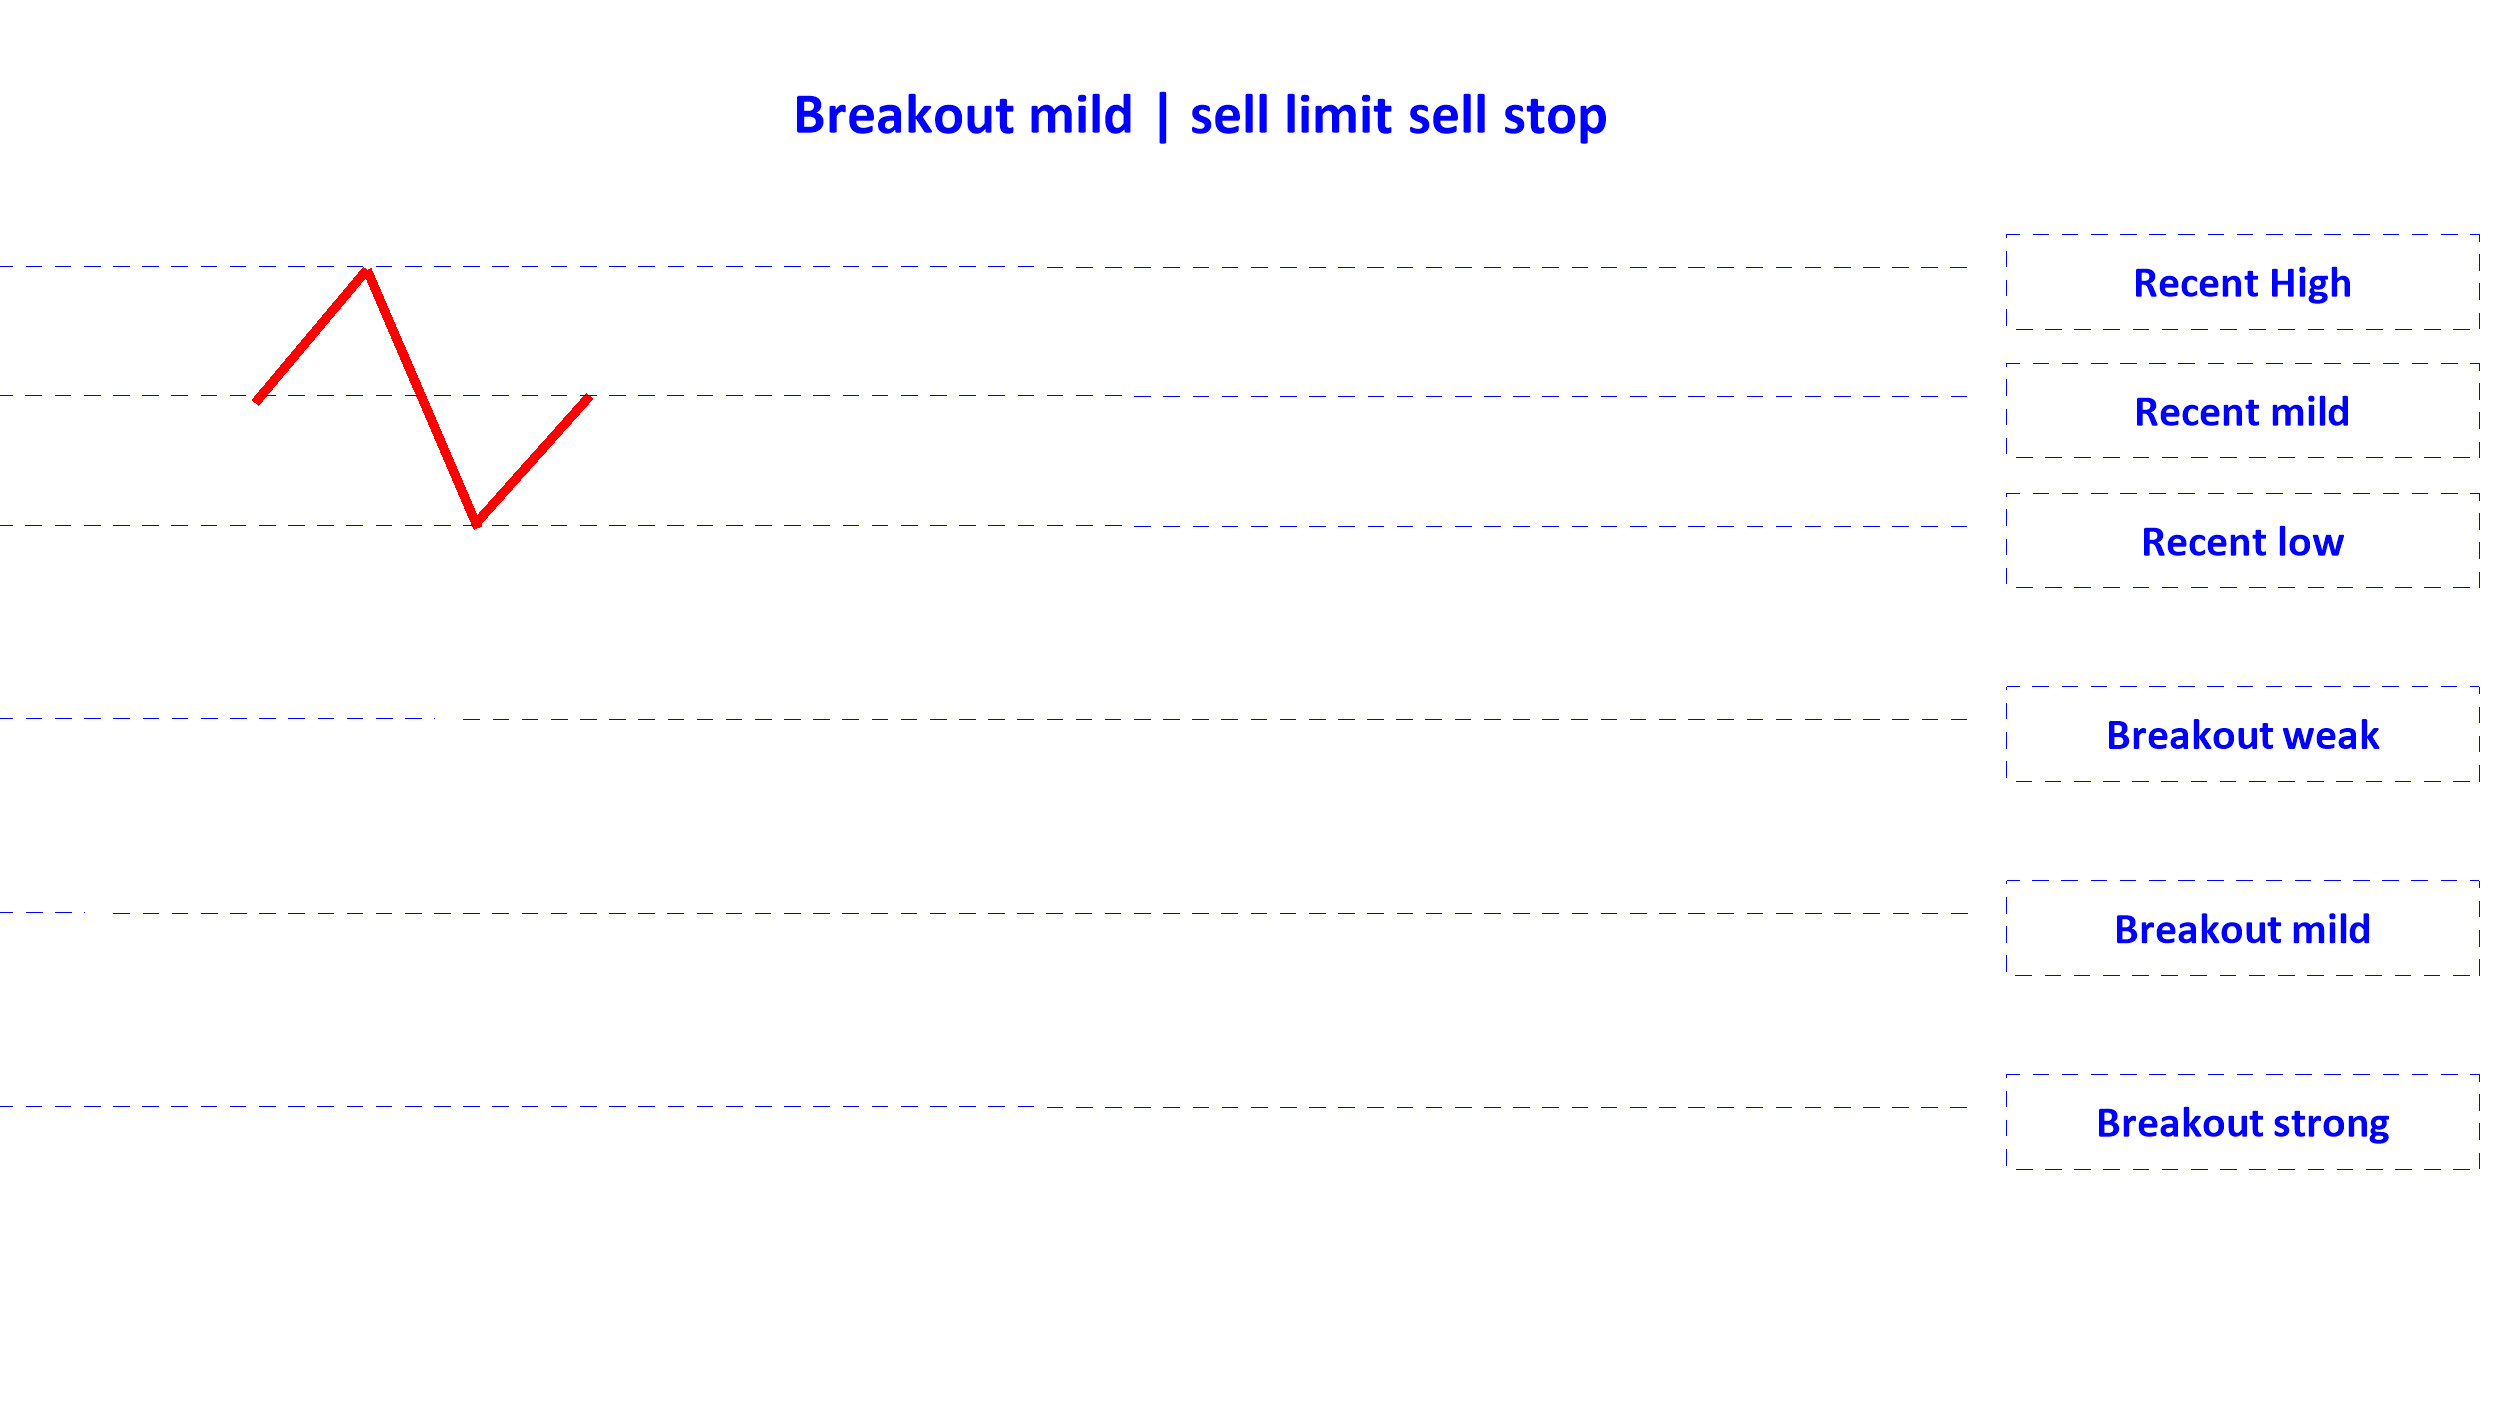 breakout mild sell limit sell stop en